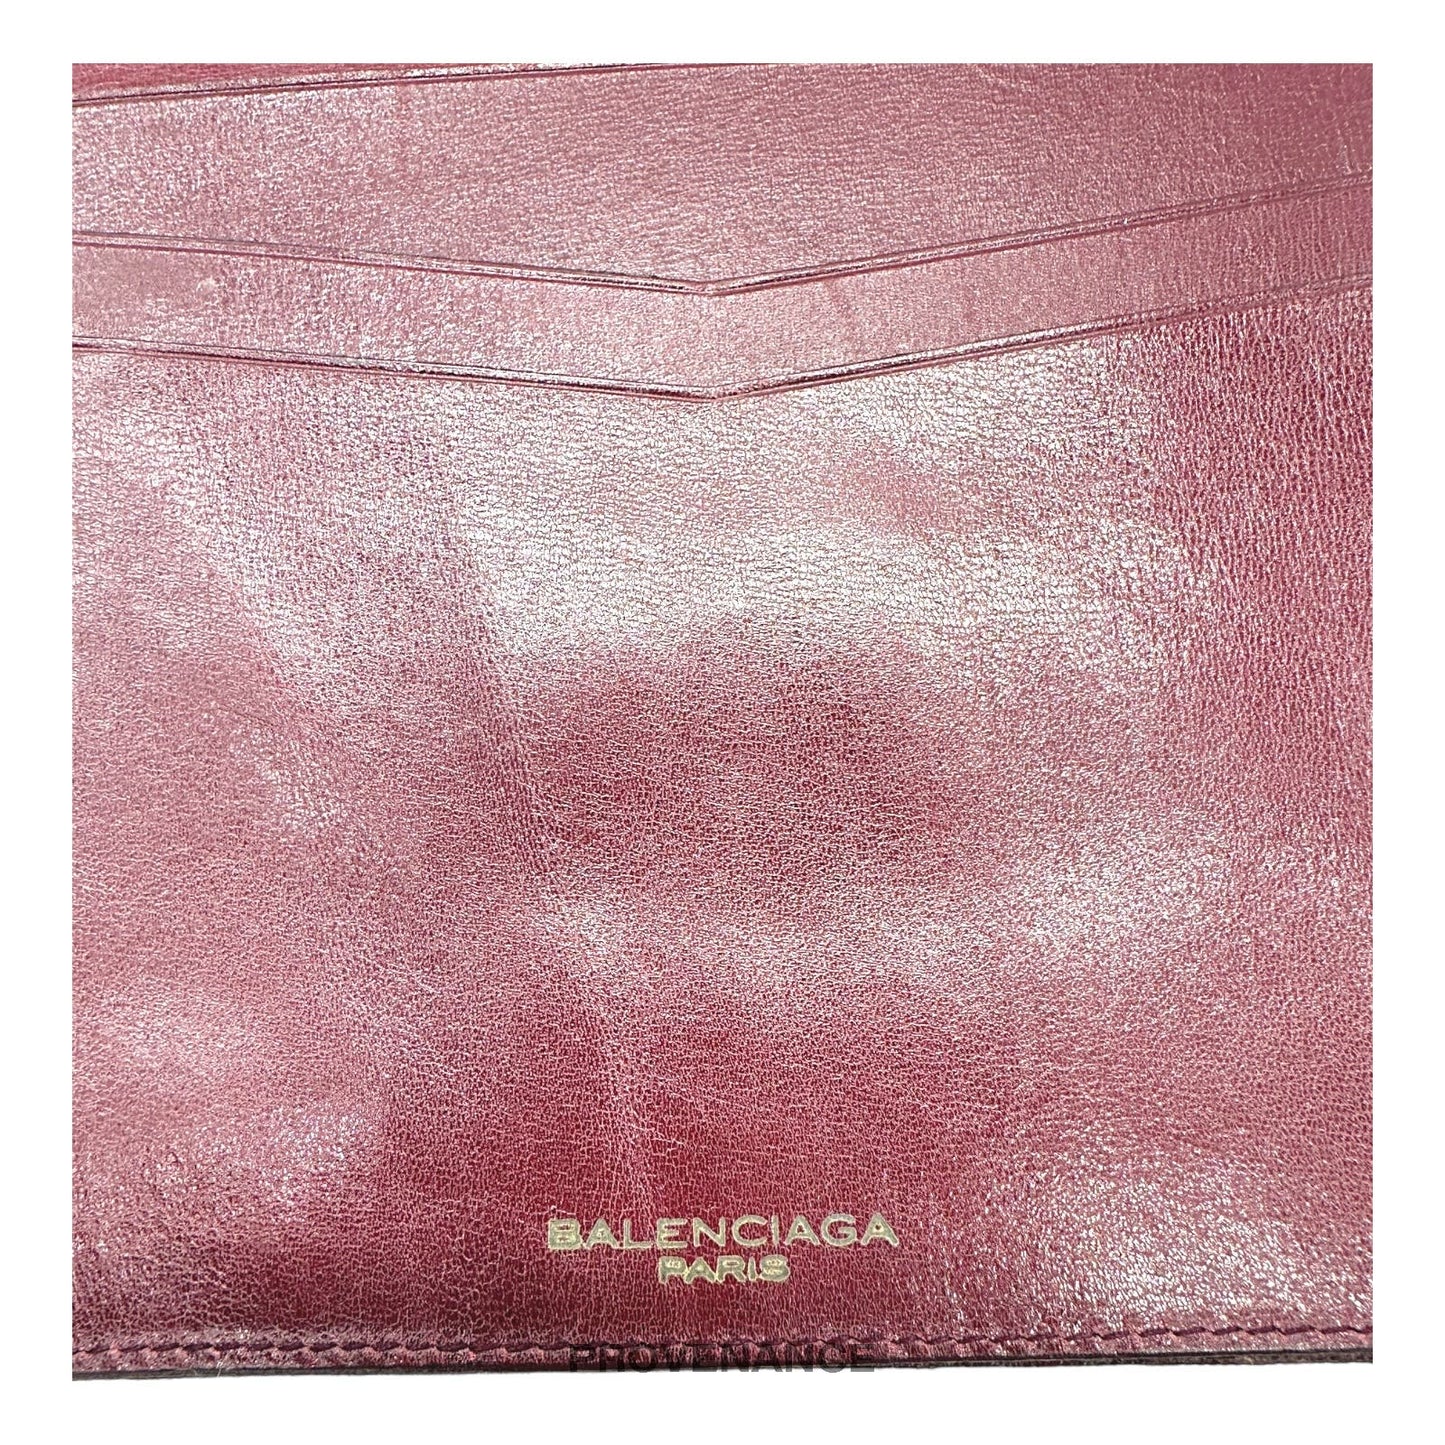 🔴 Balenciaga BB Canvas Trifold Wallet - Red Monogram